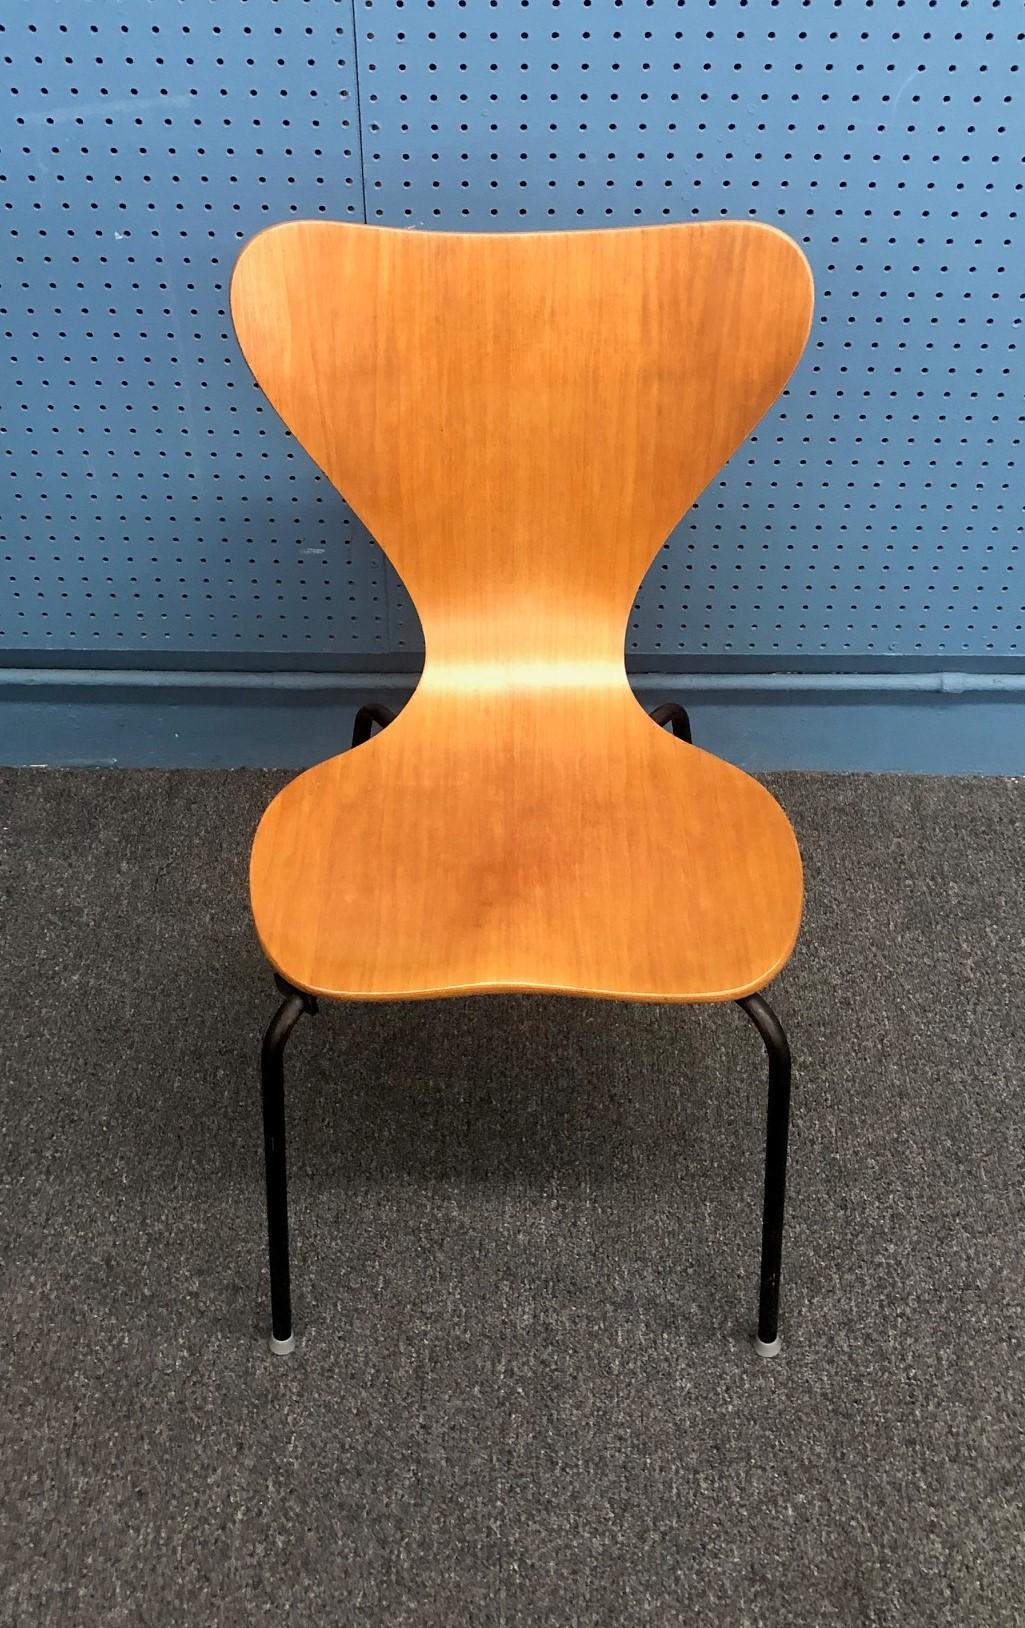 Ein sehr seltener moderner dänischer Stuhl aus Teakholz von Herbert Hirche für Jofa Stalmobler, ca. 1950er Jahre. Der Stuhl wurde in Dänemark aus dickem Sperrholz mit Teakholzfurnier hergestellt; das Gestell besteht aus schwarz lackiertem Stahlrohr.